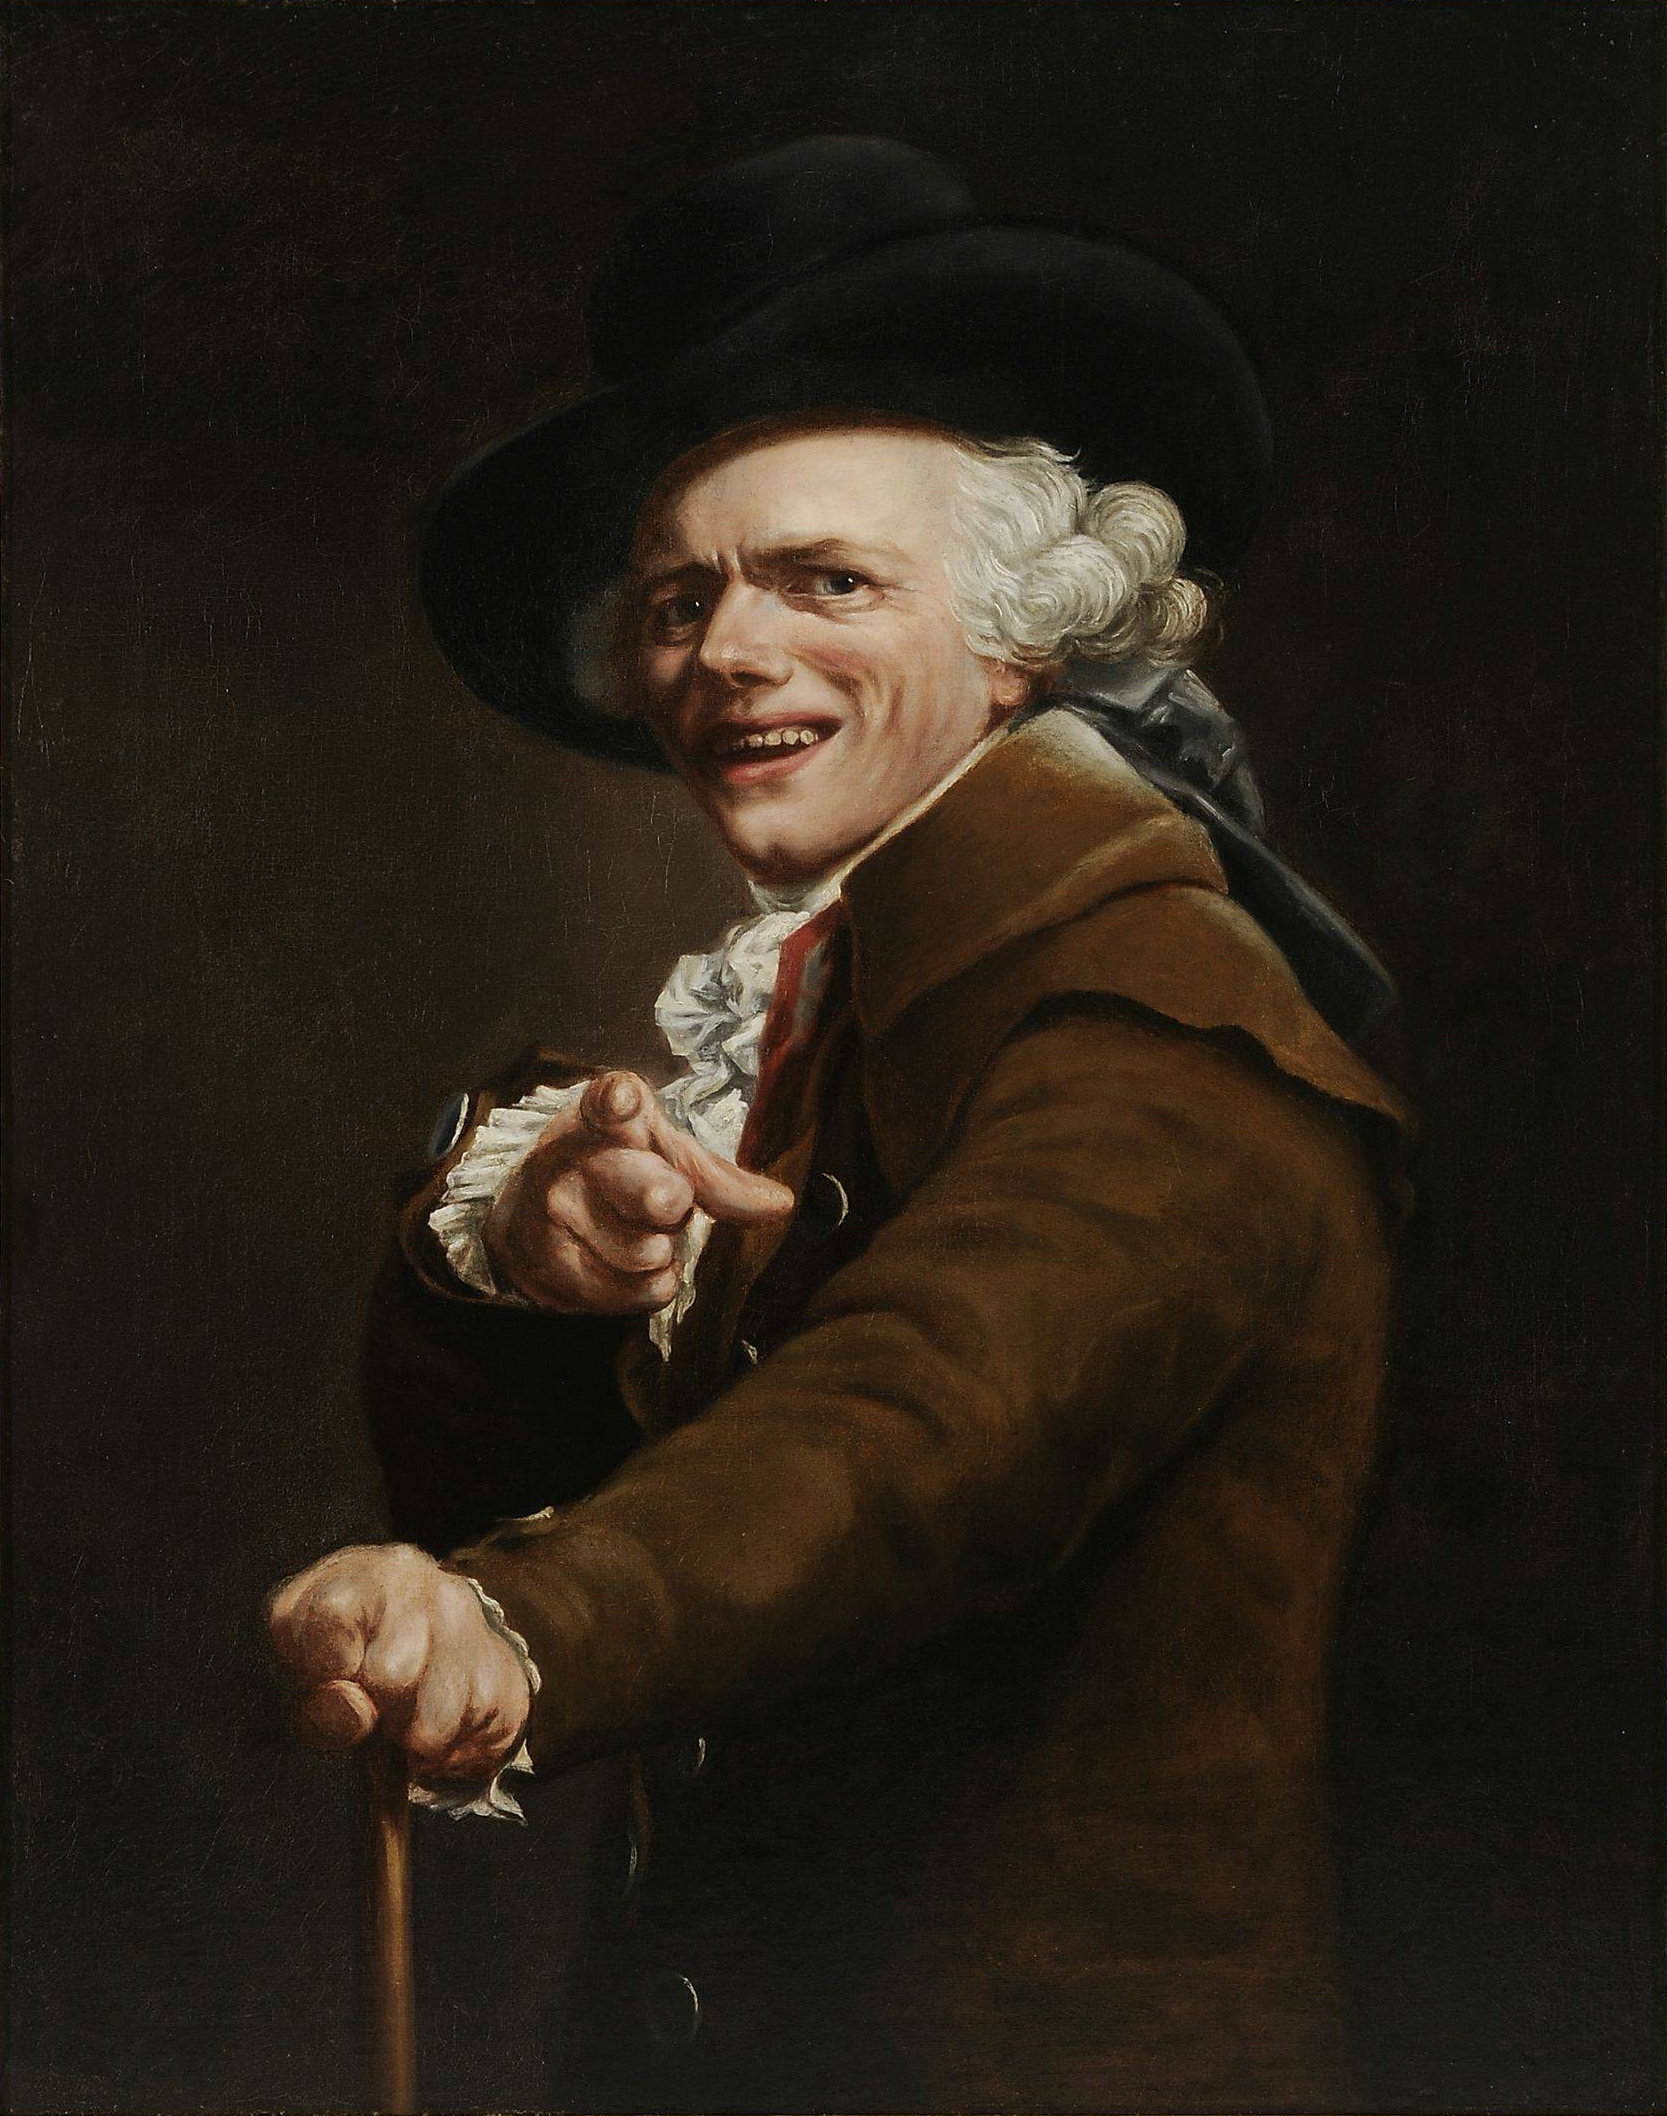 Joseph Ducreux - 26 juin 1735 - 24 juillet 1802